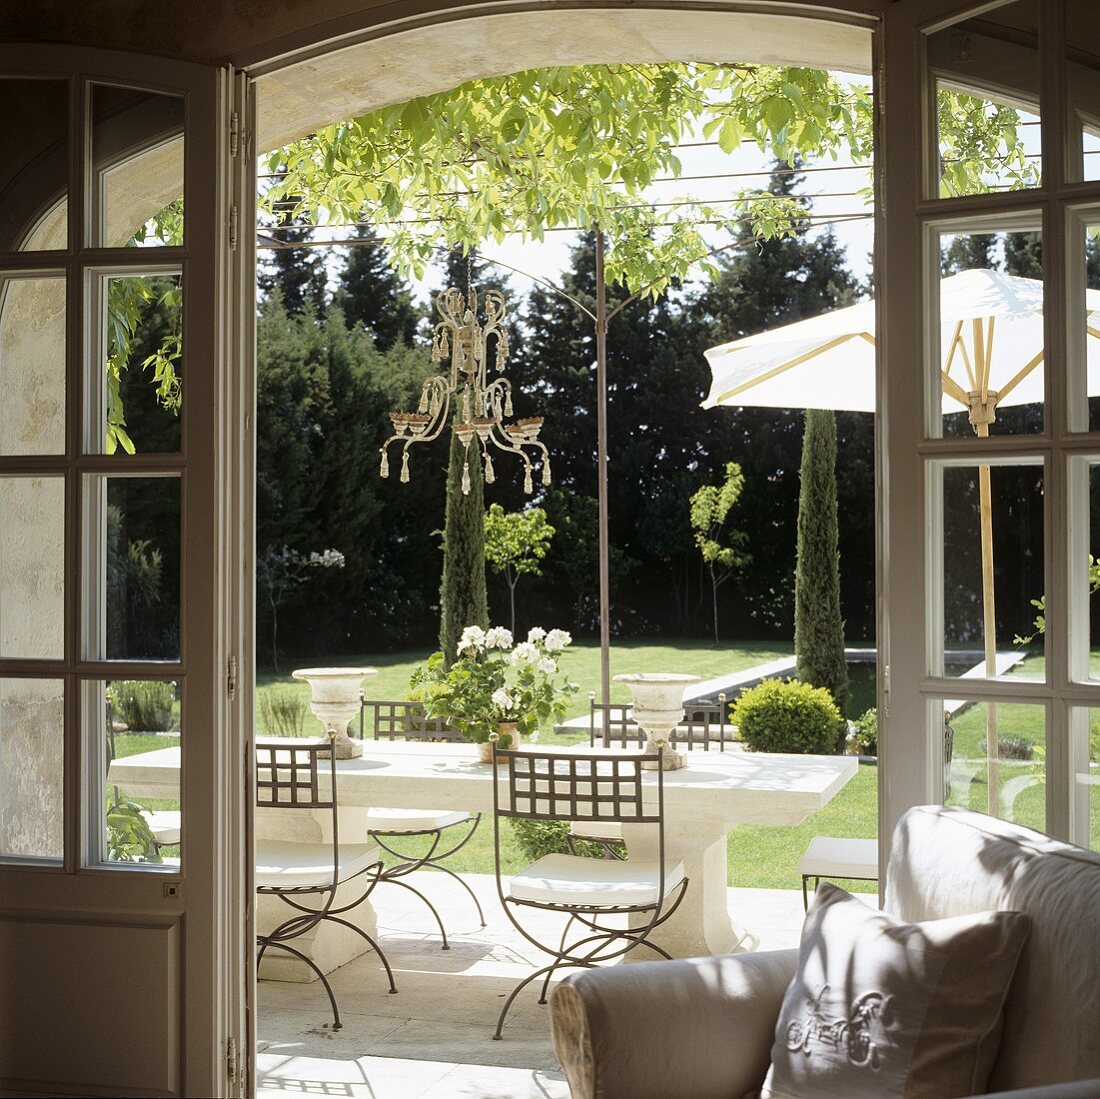 Blick durch offene Terrassentür auf elegante Outdoormöbel und Mediterraner Garten